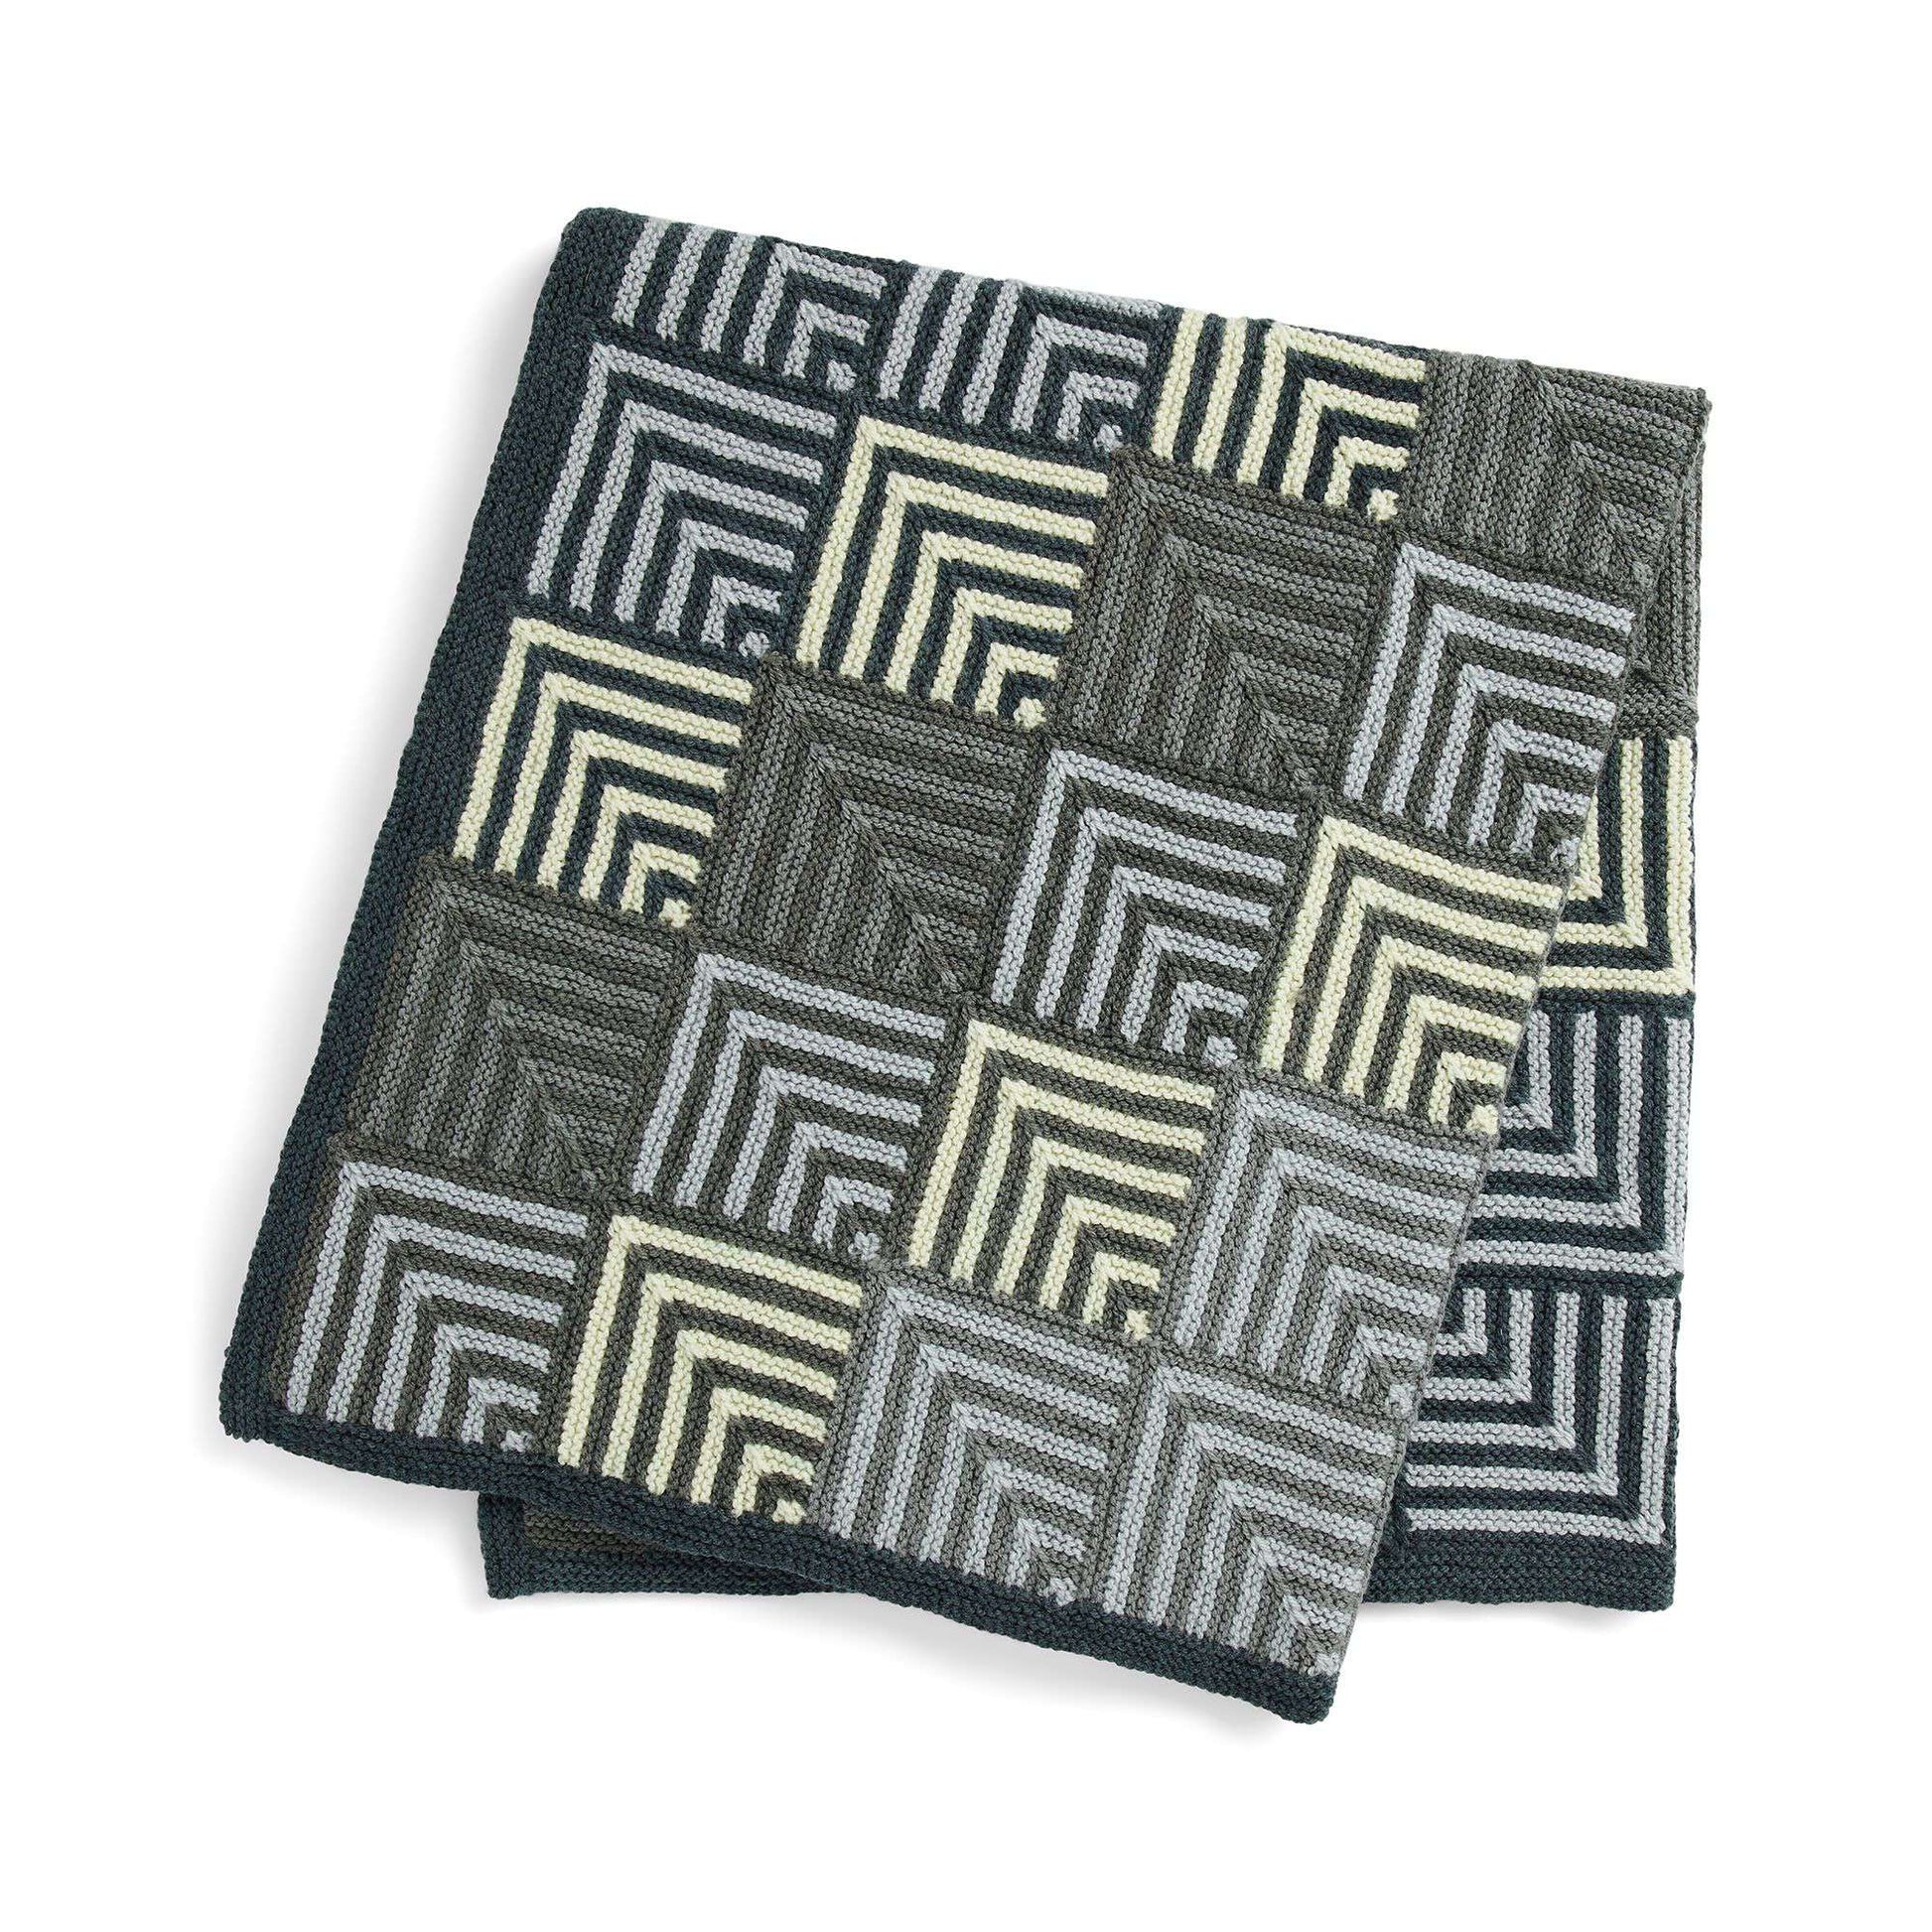 Free Caron Fading Blocks Mitered Knit Blanket Pattern